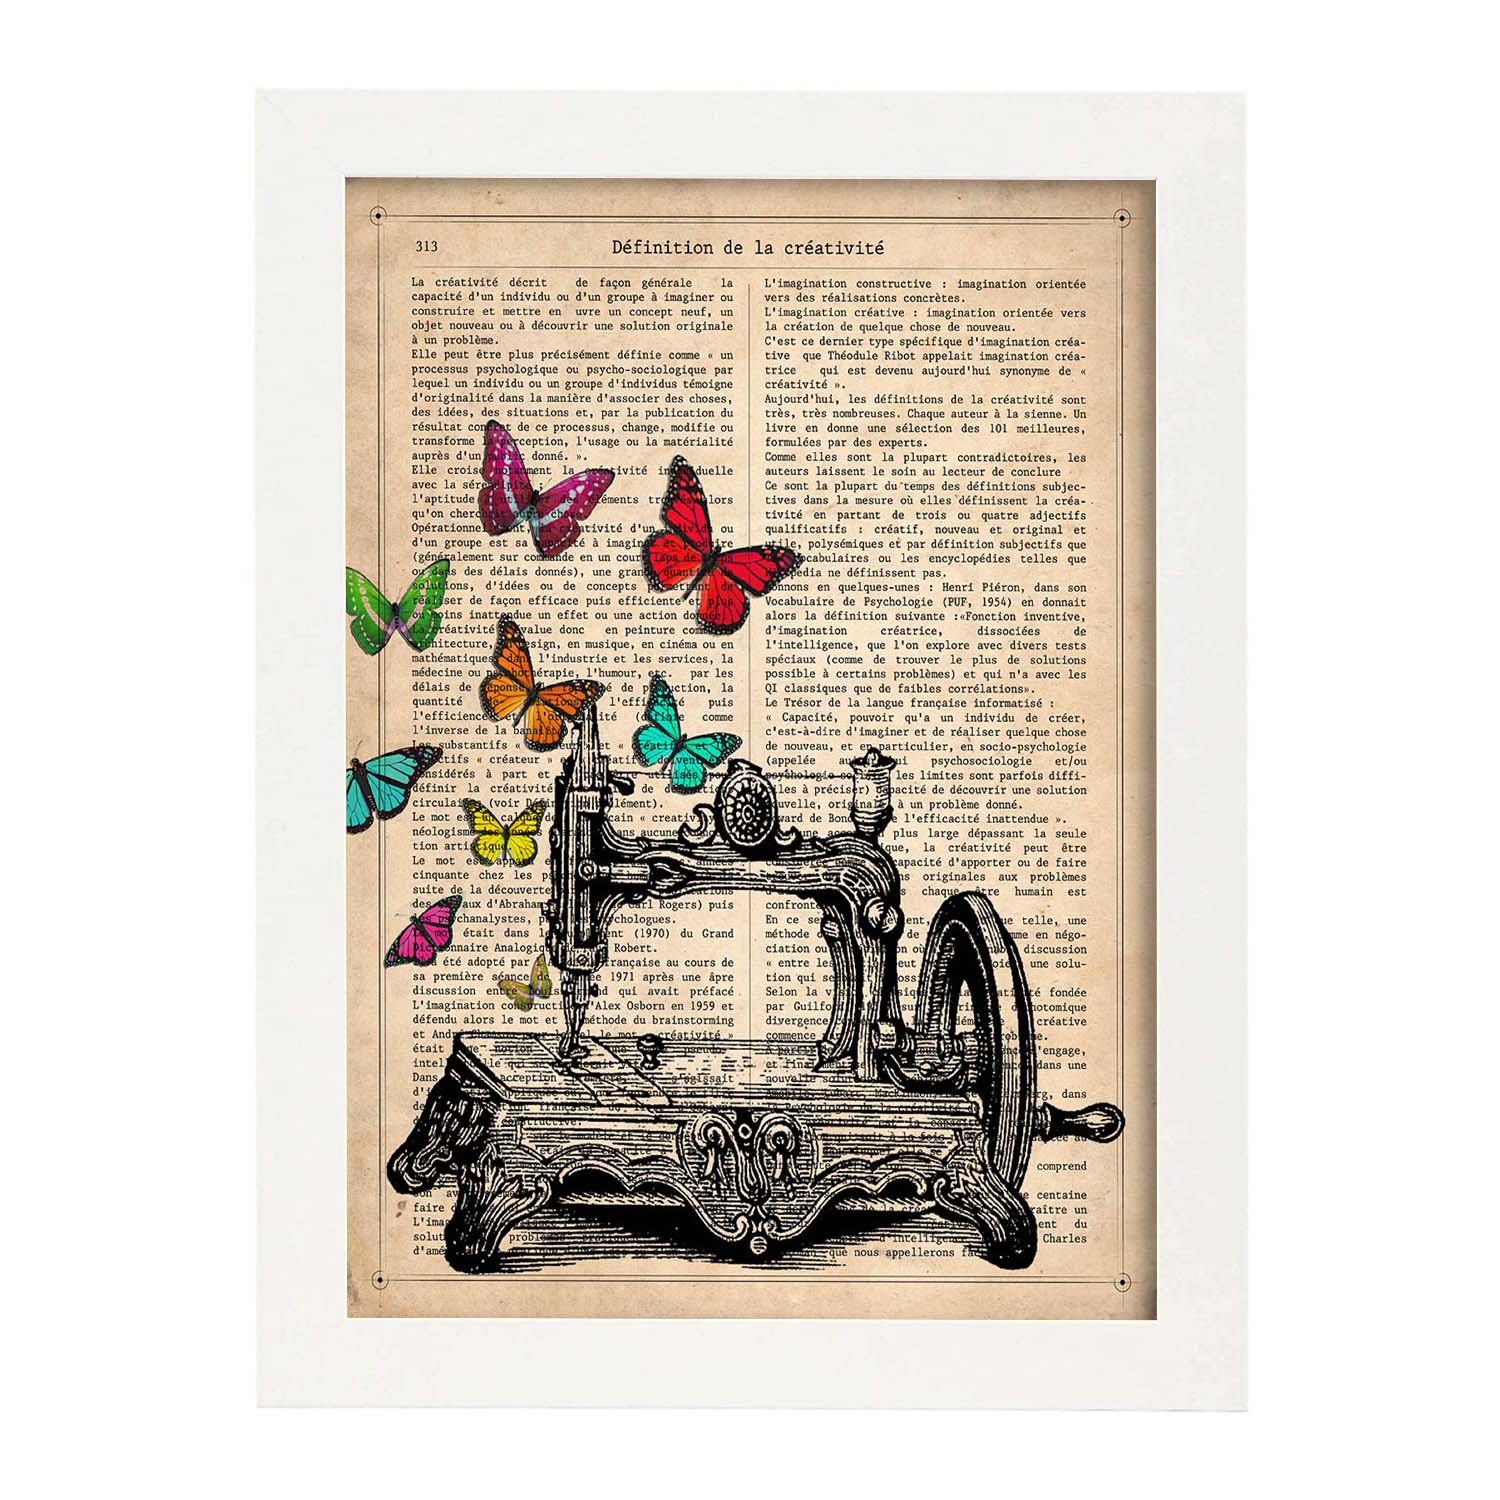 Poster de Maquina de coser. Láminas de mariposas. Decoración de mariposas y polillas.-Artwork-Nacnic-Nacnic Estudio SL